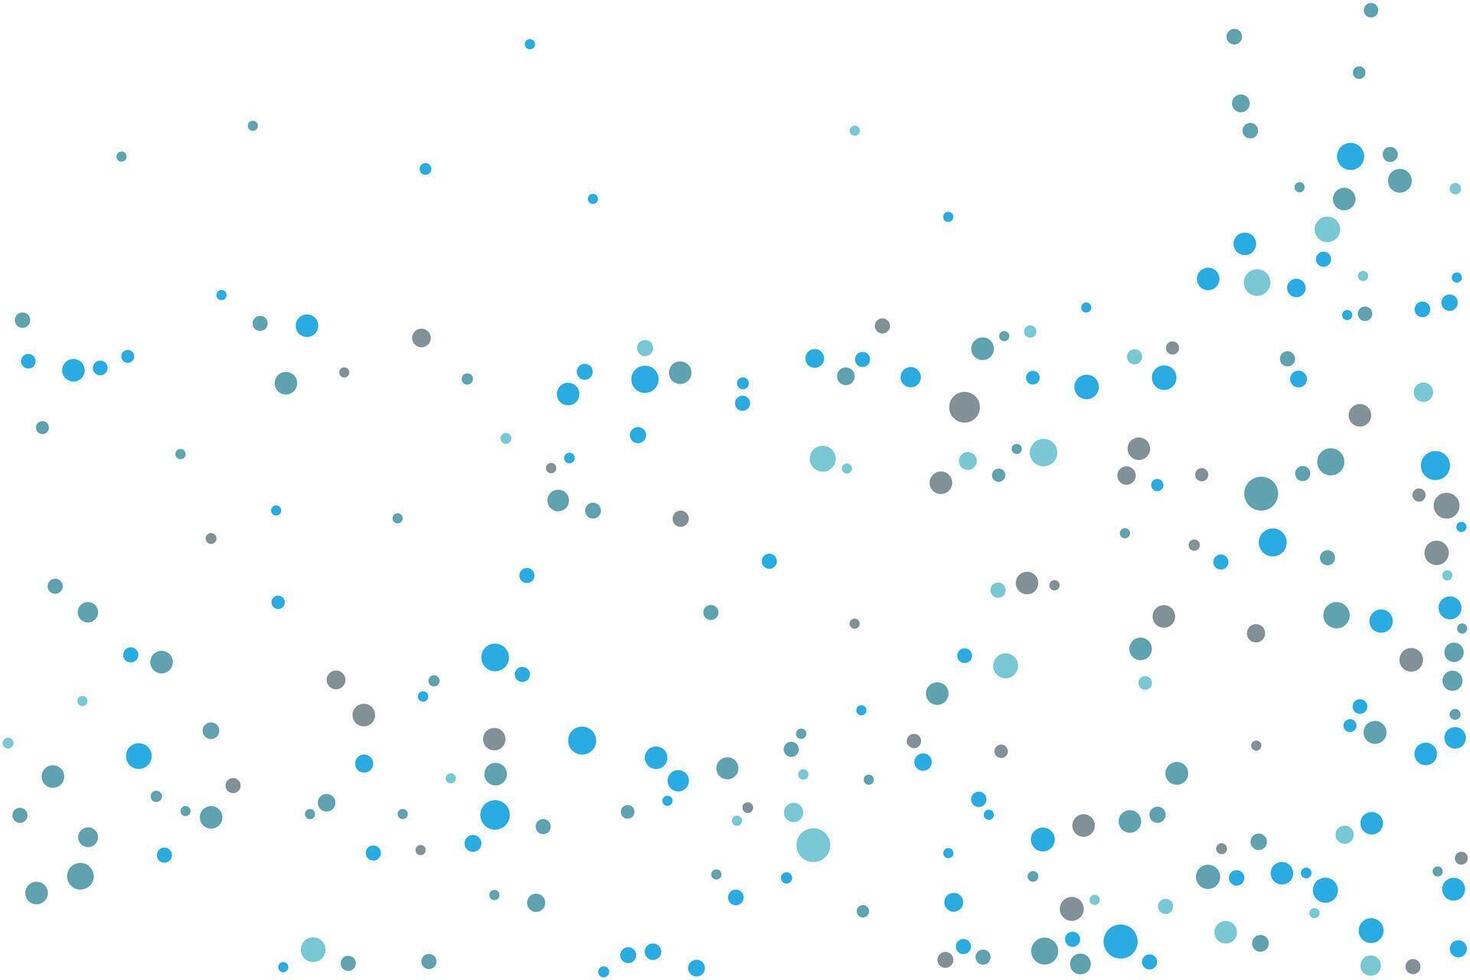 licht blauw bollen vorm vector patroon ontwerp voor affiches, spandoeken, wazig decoratief abstract met bubbels.